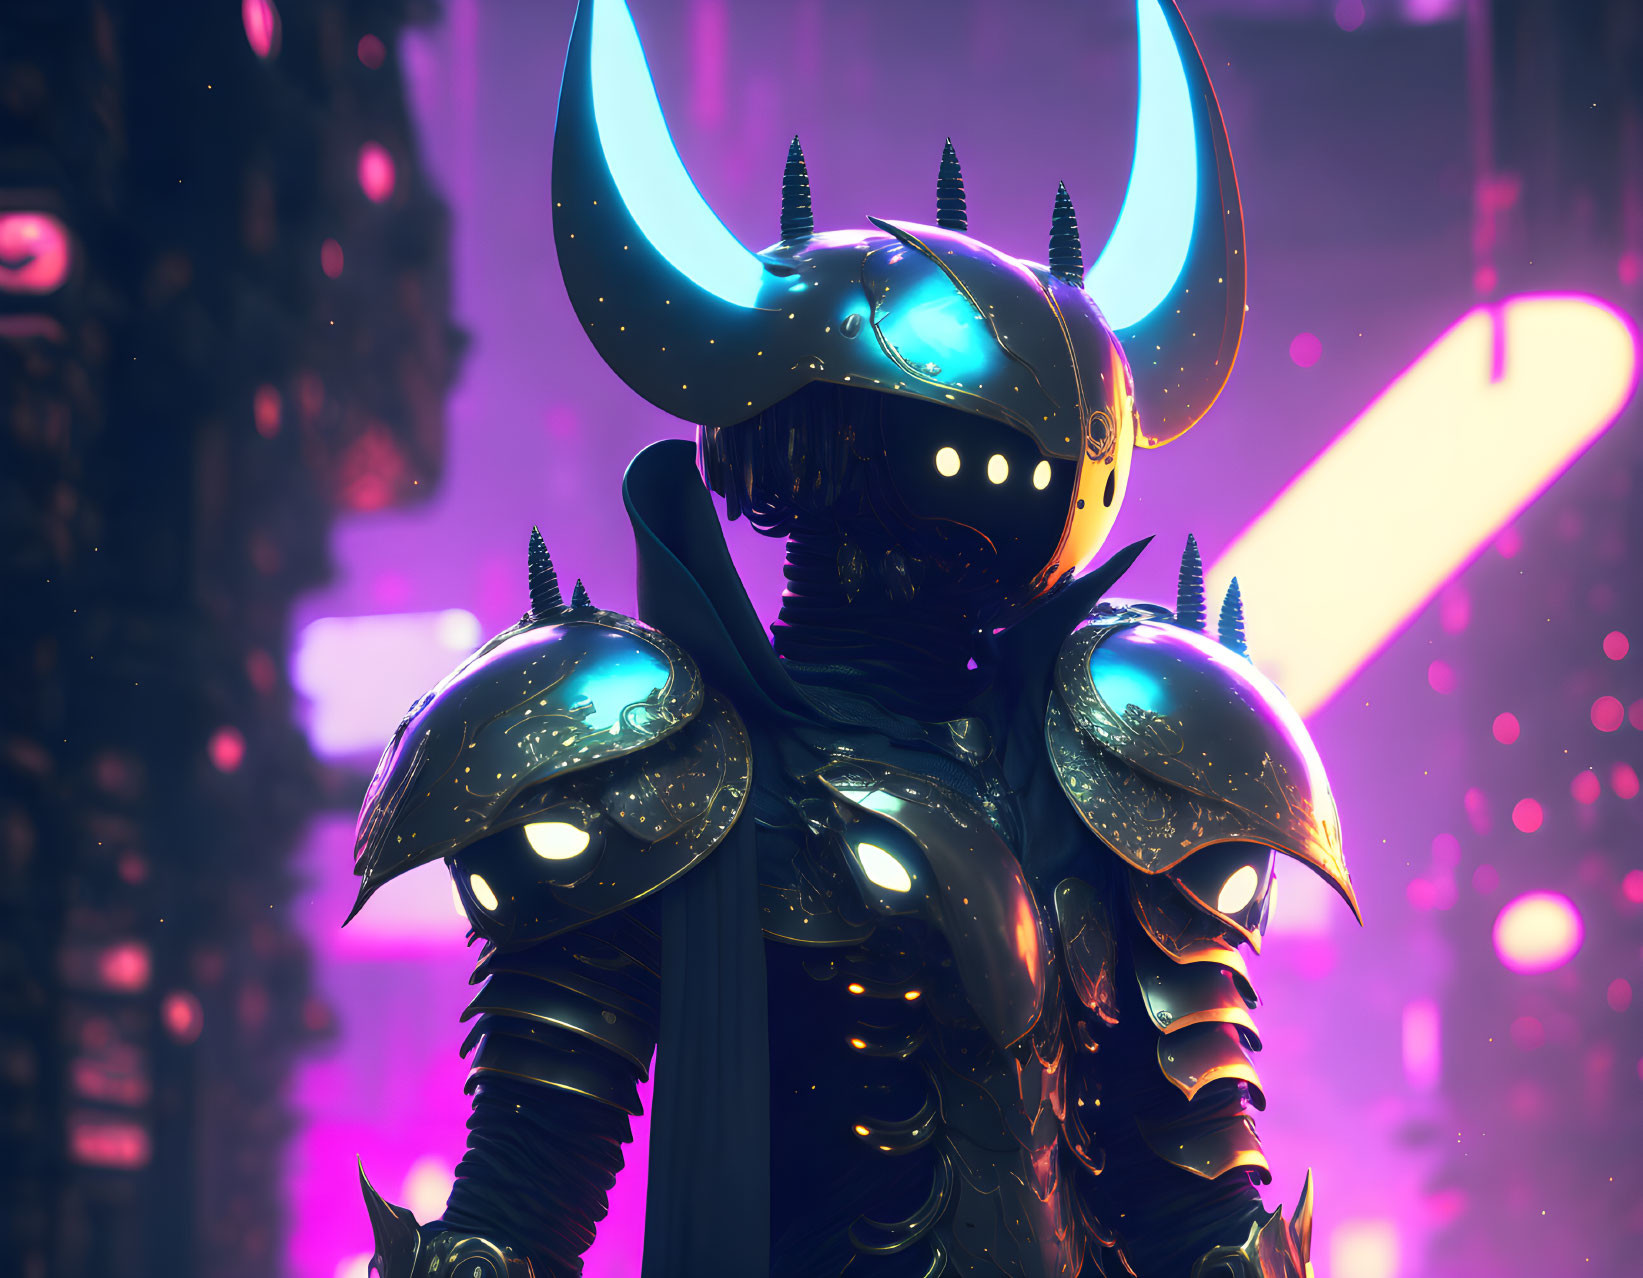 Hollow Knight in Cyberpunk style